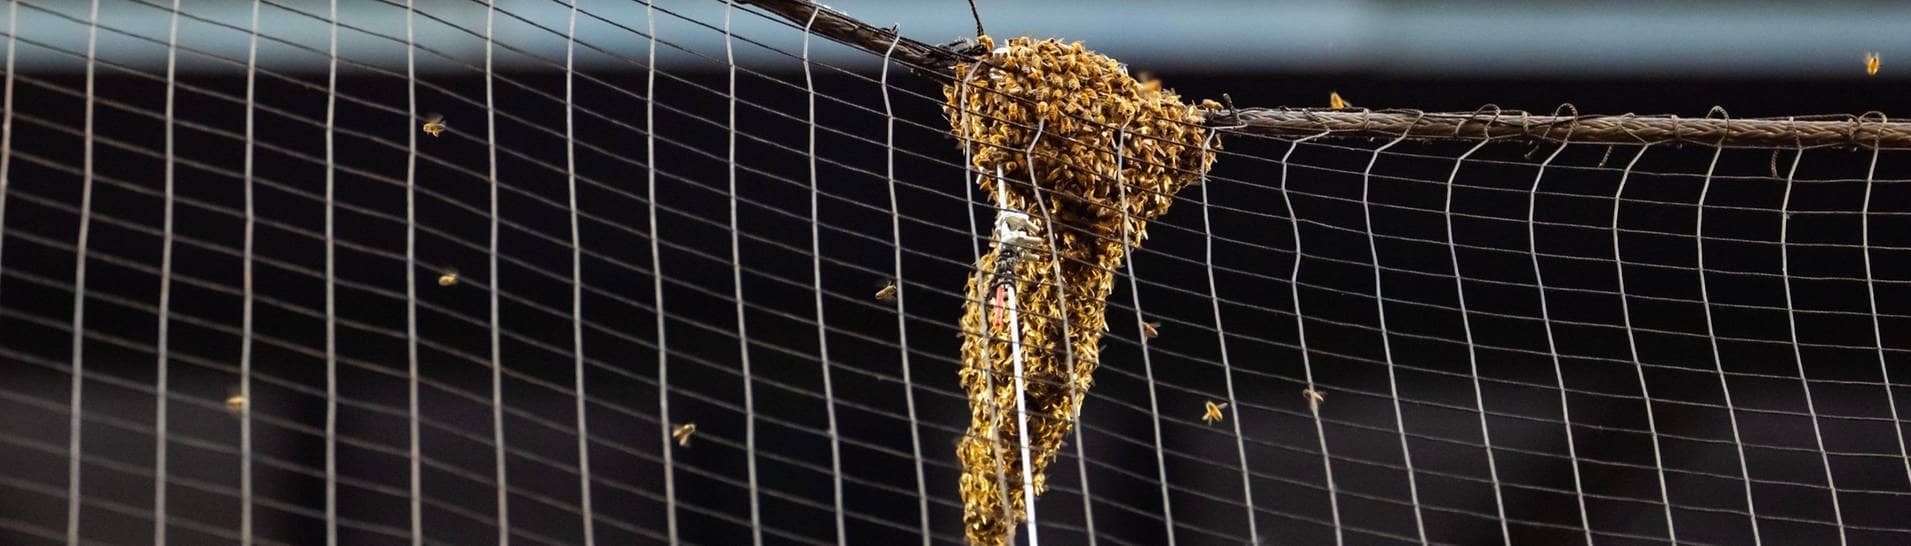 Ein Bienenschwarm hängt auf einer Leine eines Sicherheitsnetztes auf dem Baseballfeld der Arizona Diamondbacks beim Spiel gegen die LA Dodgers.